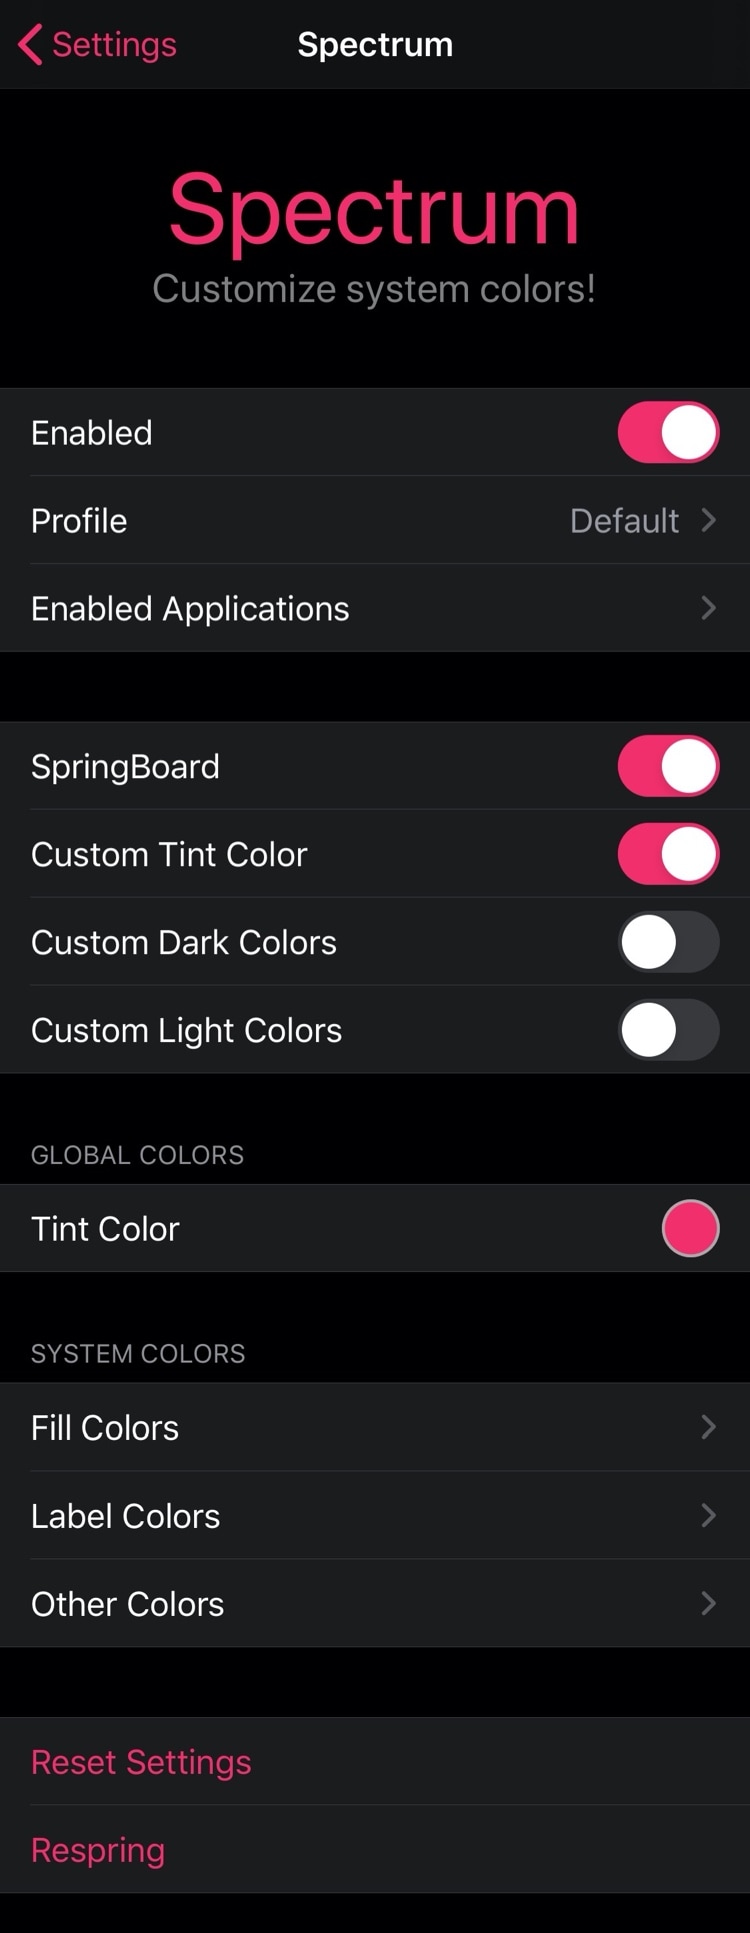 Spectrum позволяет джейлбрейкерам бесплатно раскрашивать пользовательский интерфейс iOS 3